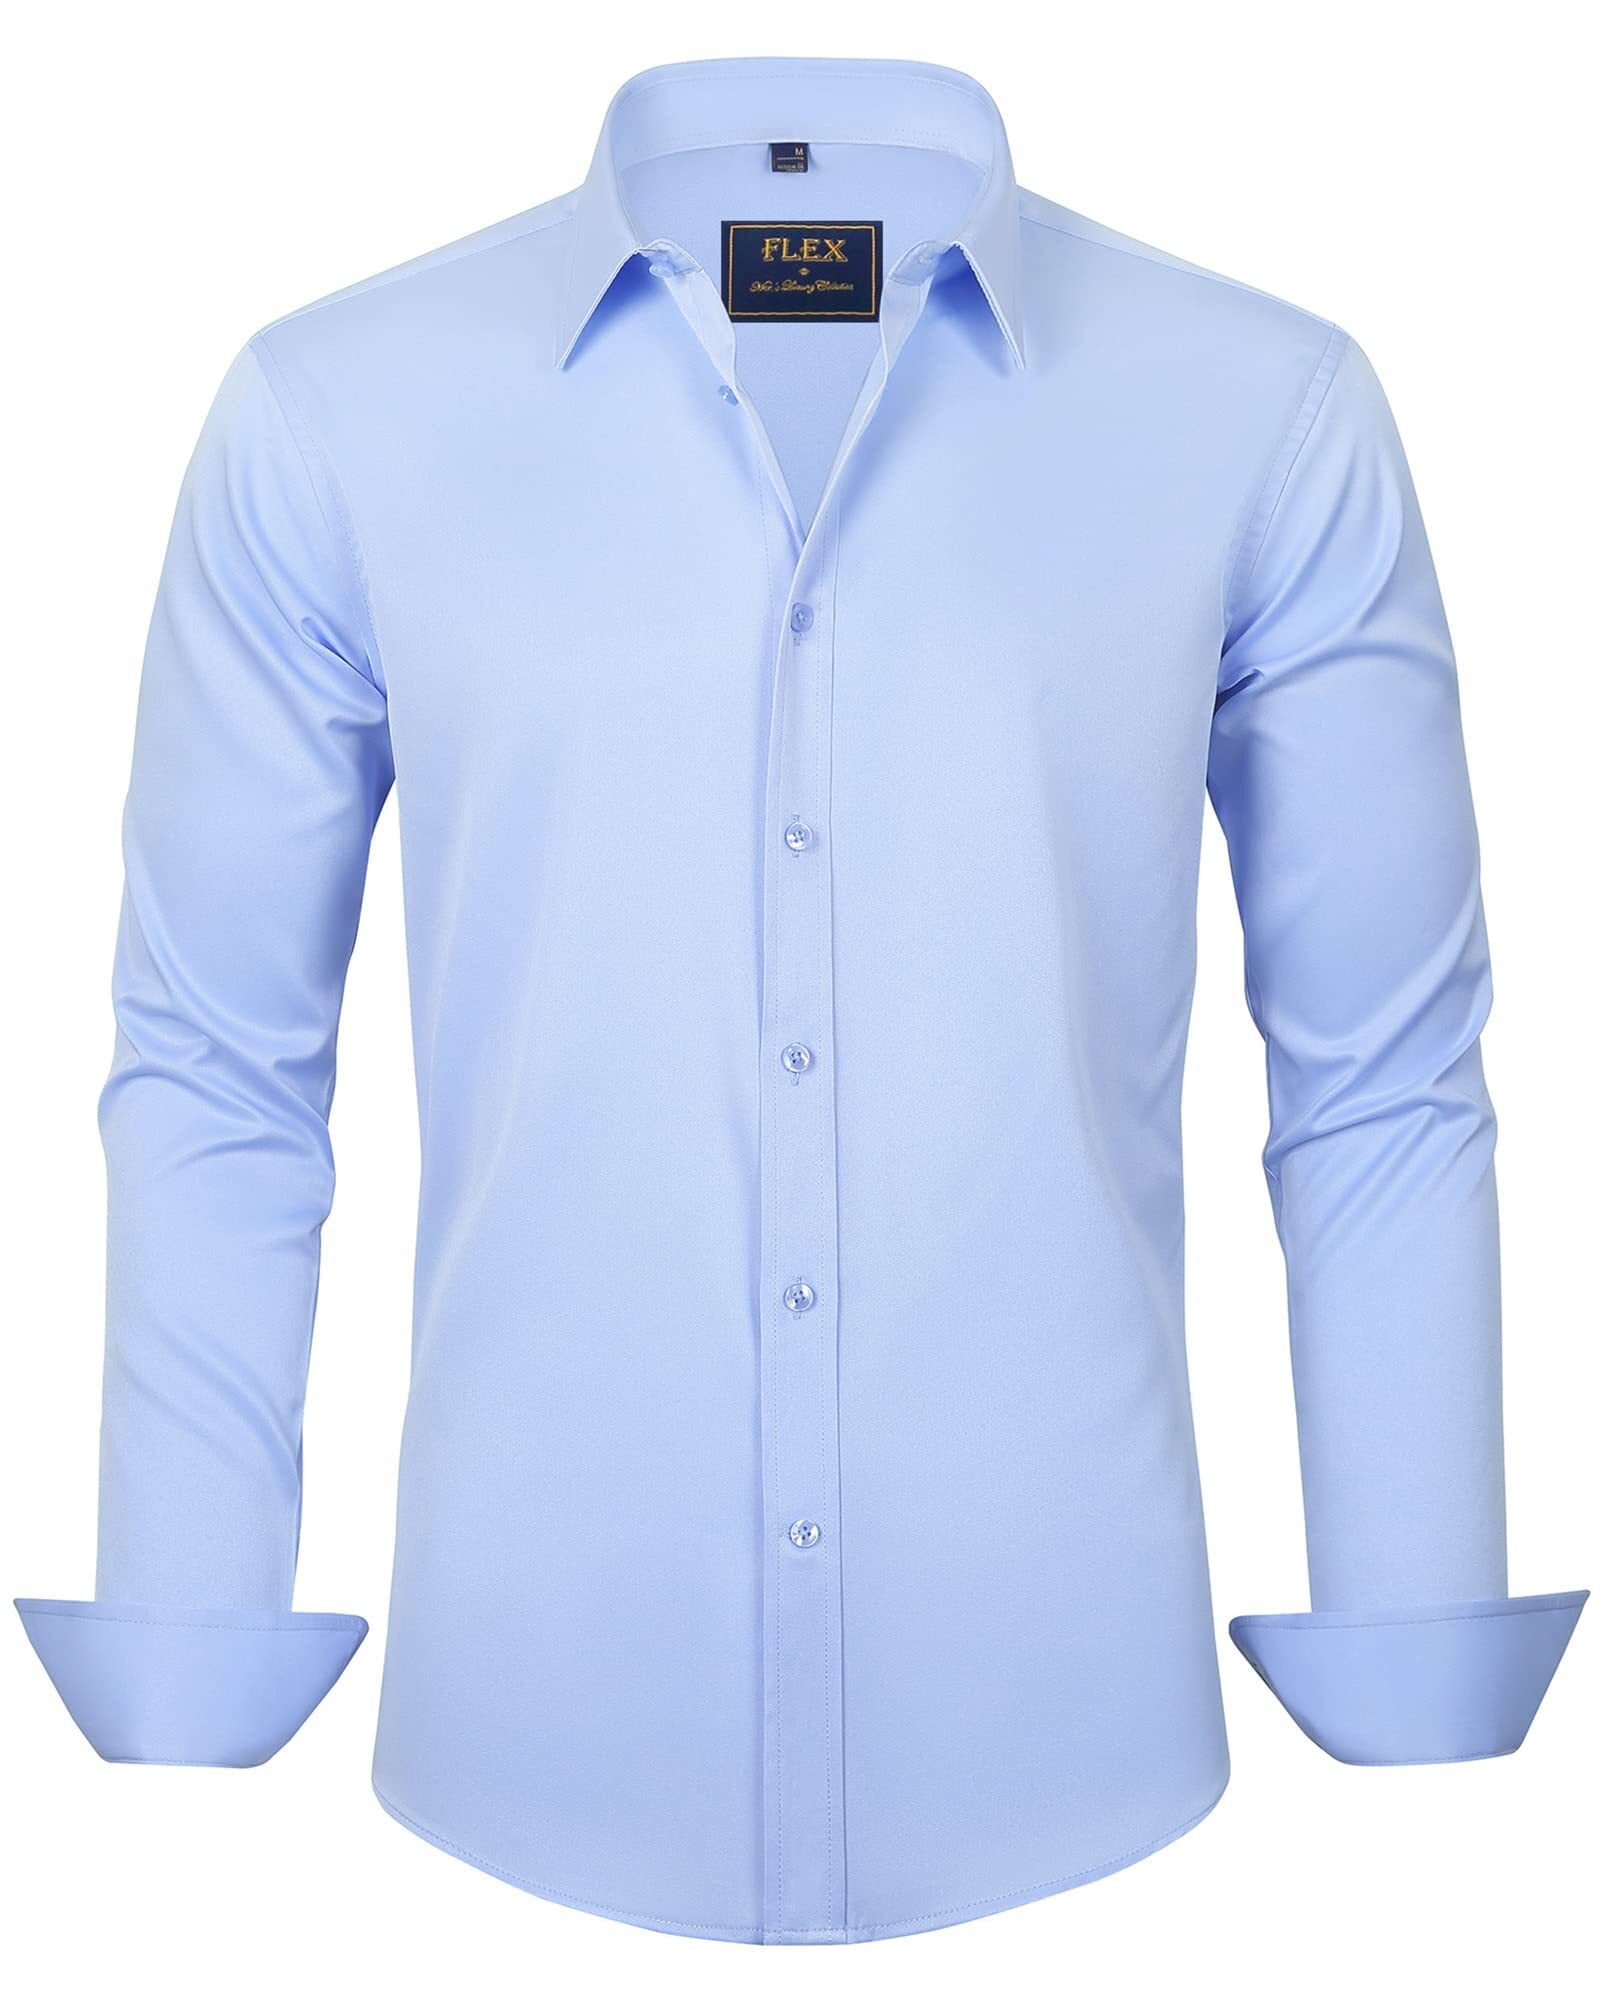 men’s dress shirt blue